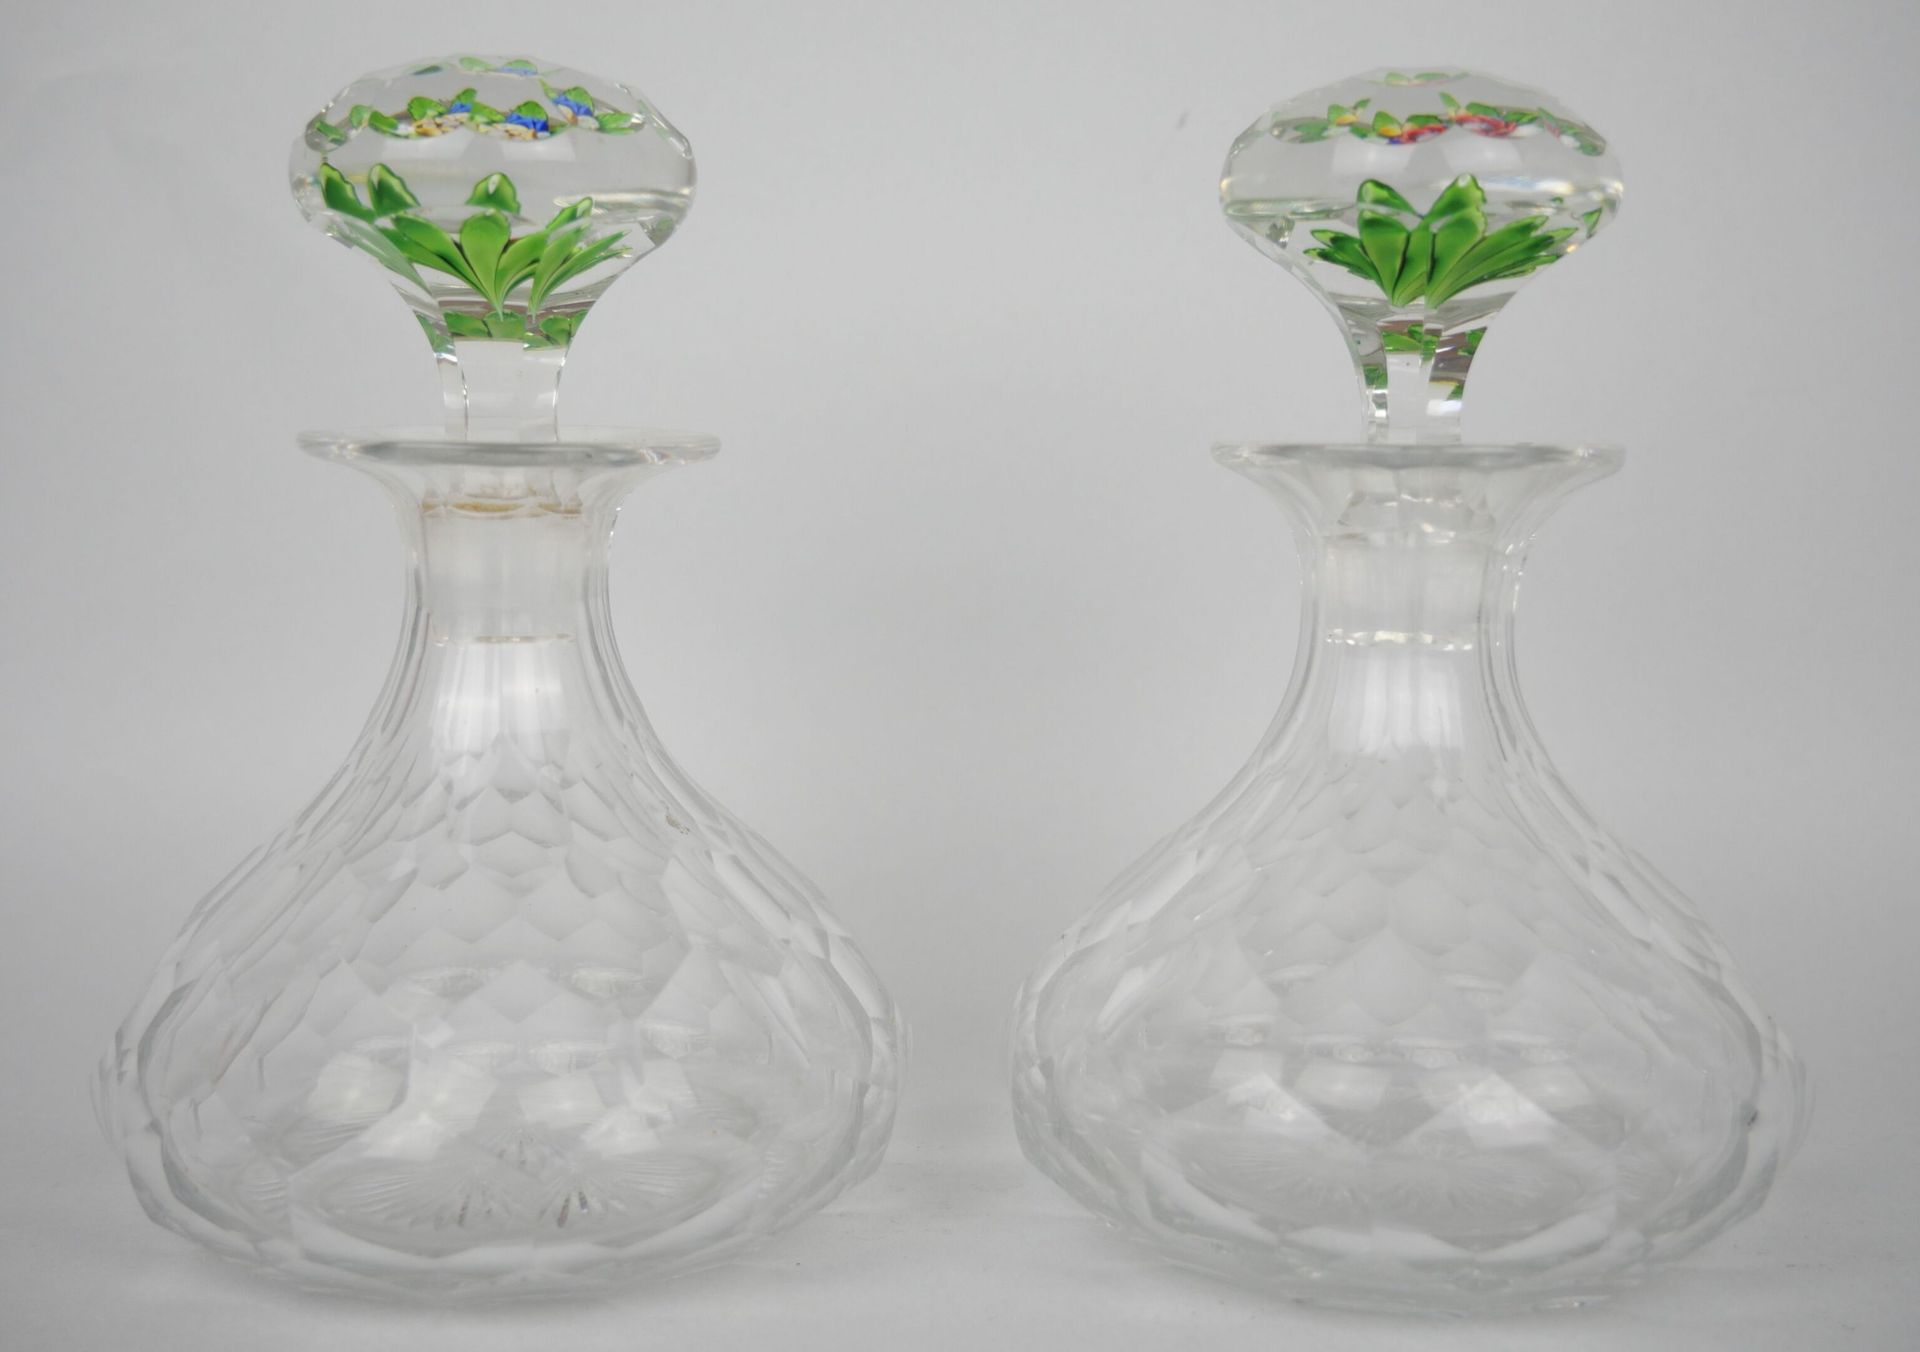 Null 一套两个小的切割水晶瓶，有蜂窝状的装饰，瓶塞有镶嵌的花。19世纪末的作品。

尺寸：16 x 10 cm

(咖啡杯上的一个芯片)





收集拍品&hellip;